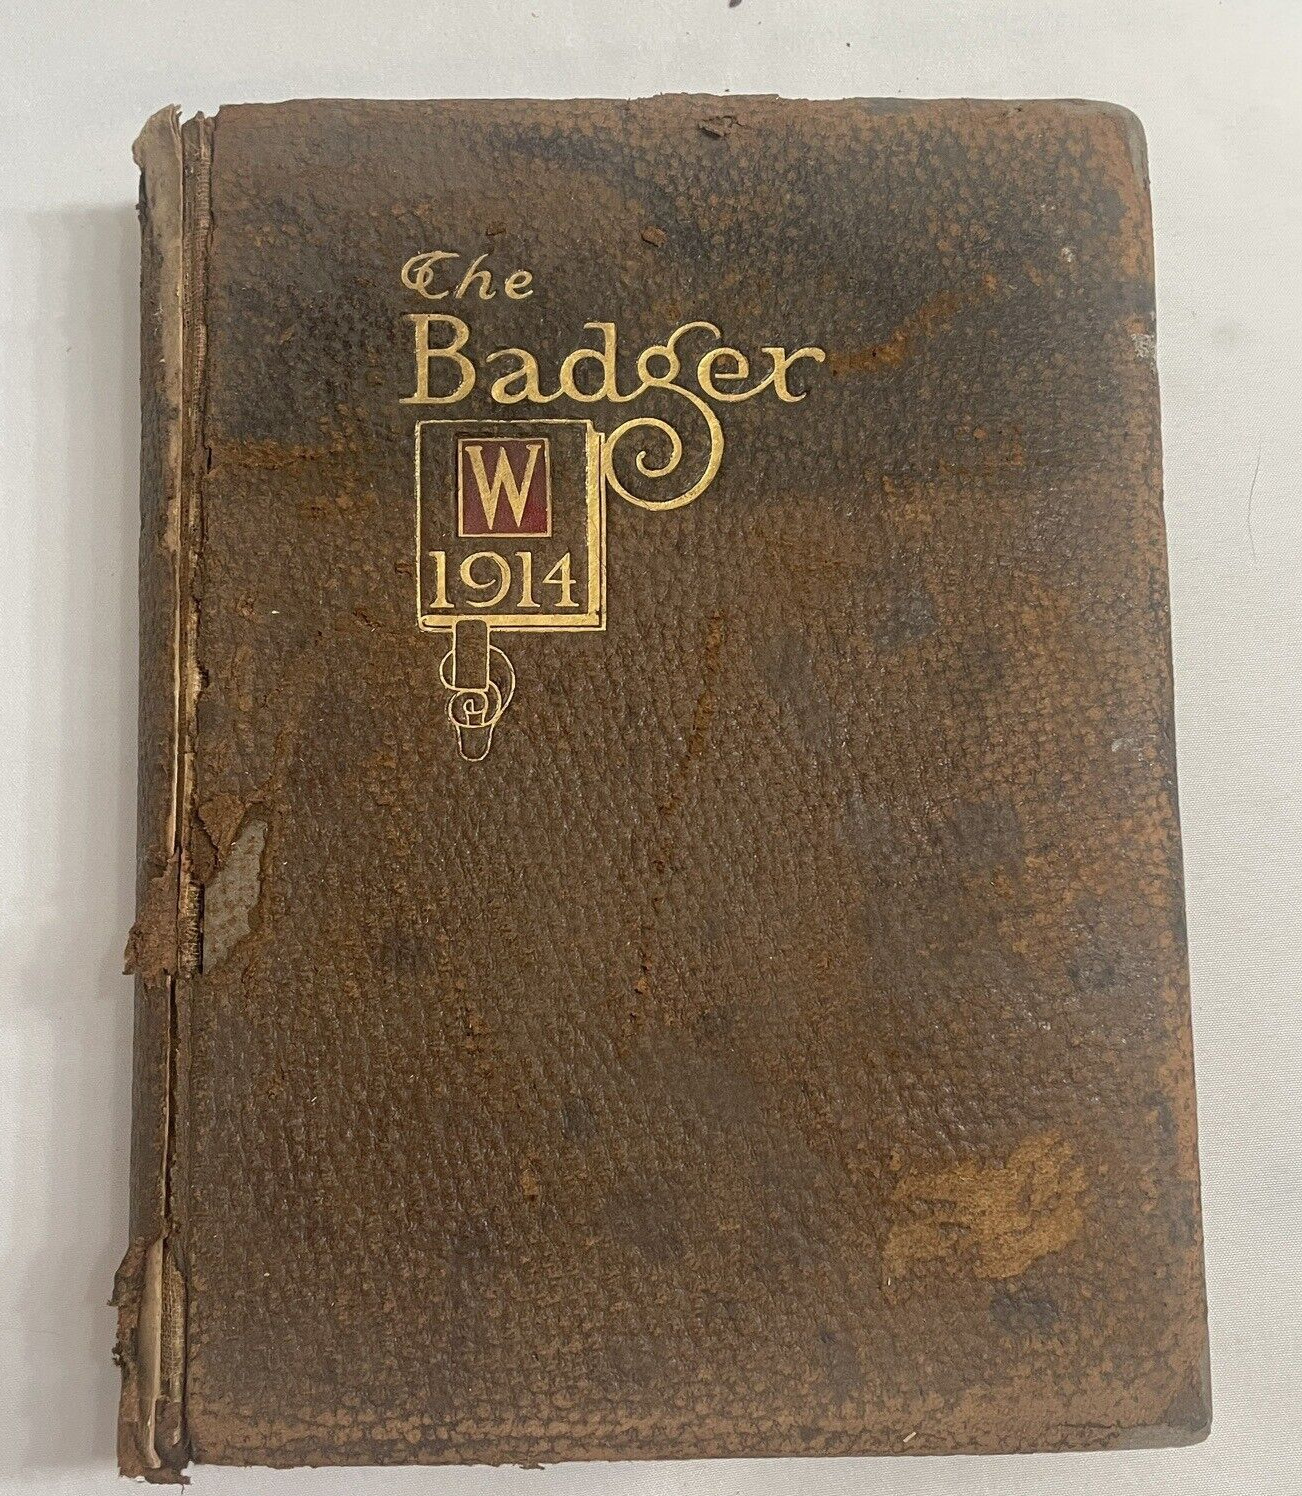 BADGER UNIVERSITY OF WISCONSIN 1914 COLLEGE YEARBOOK ANTIQUE